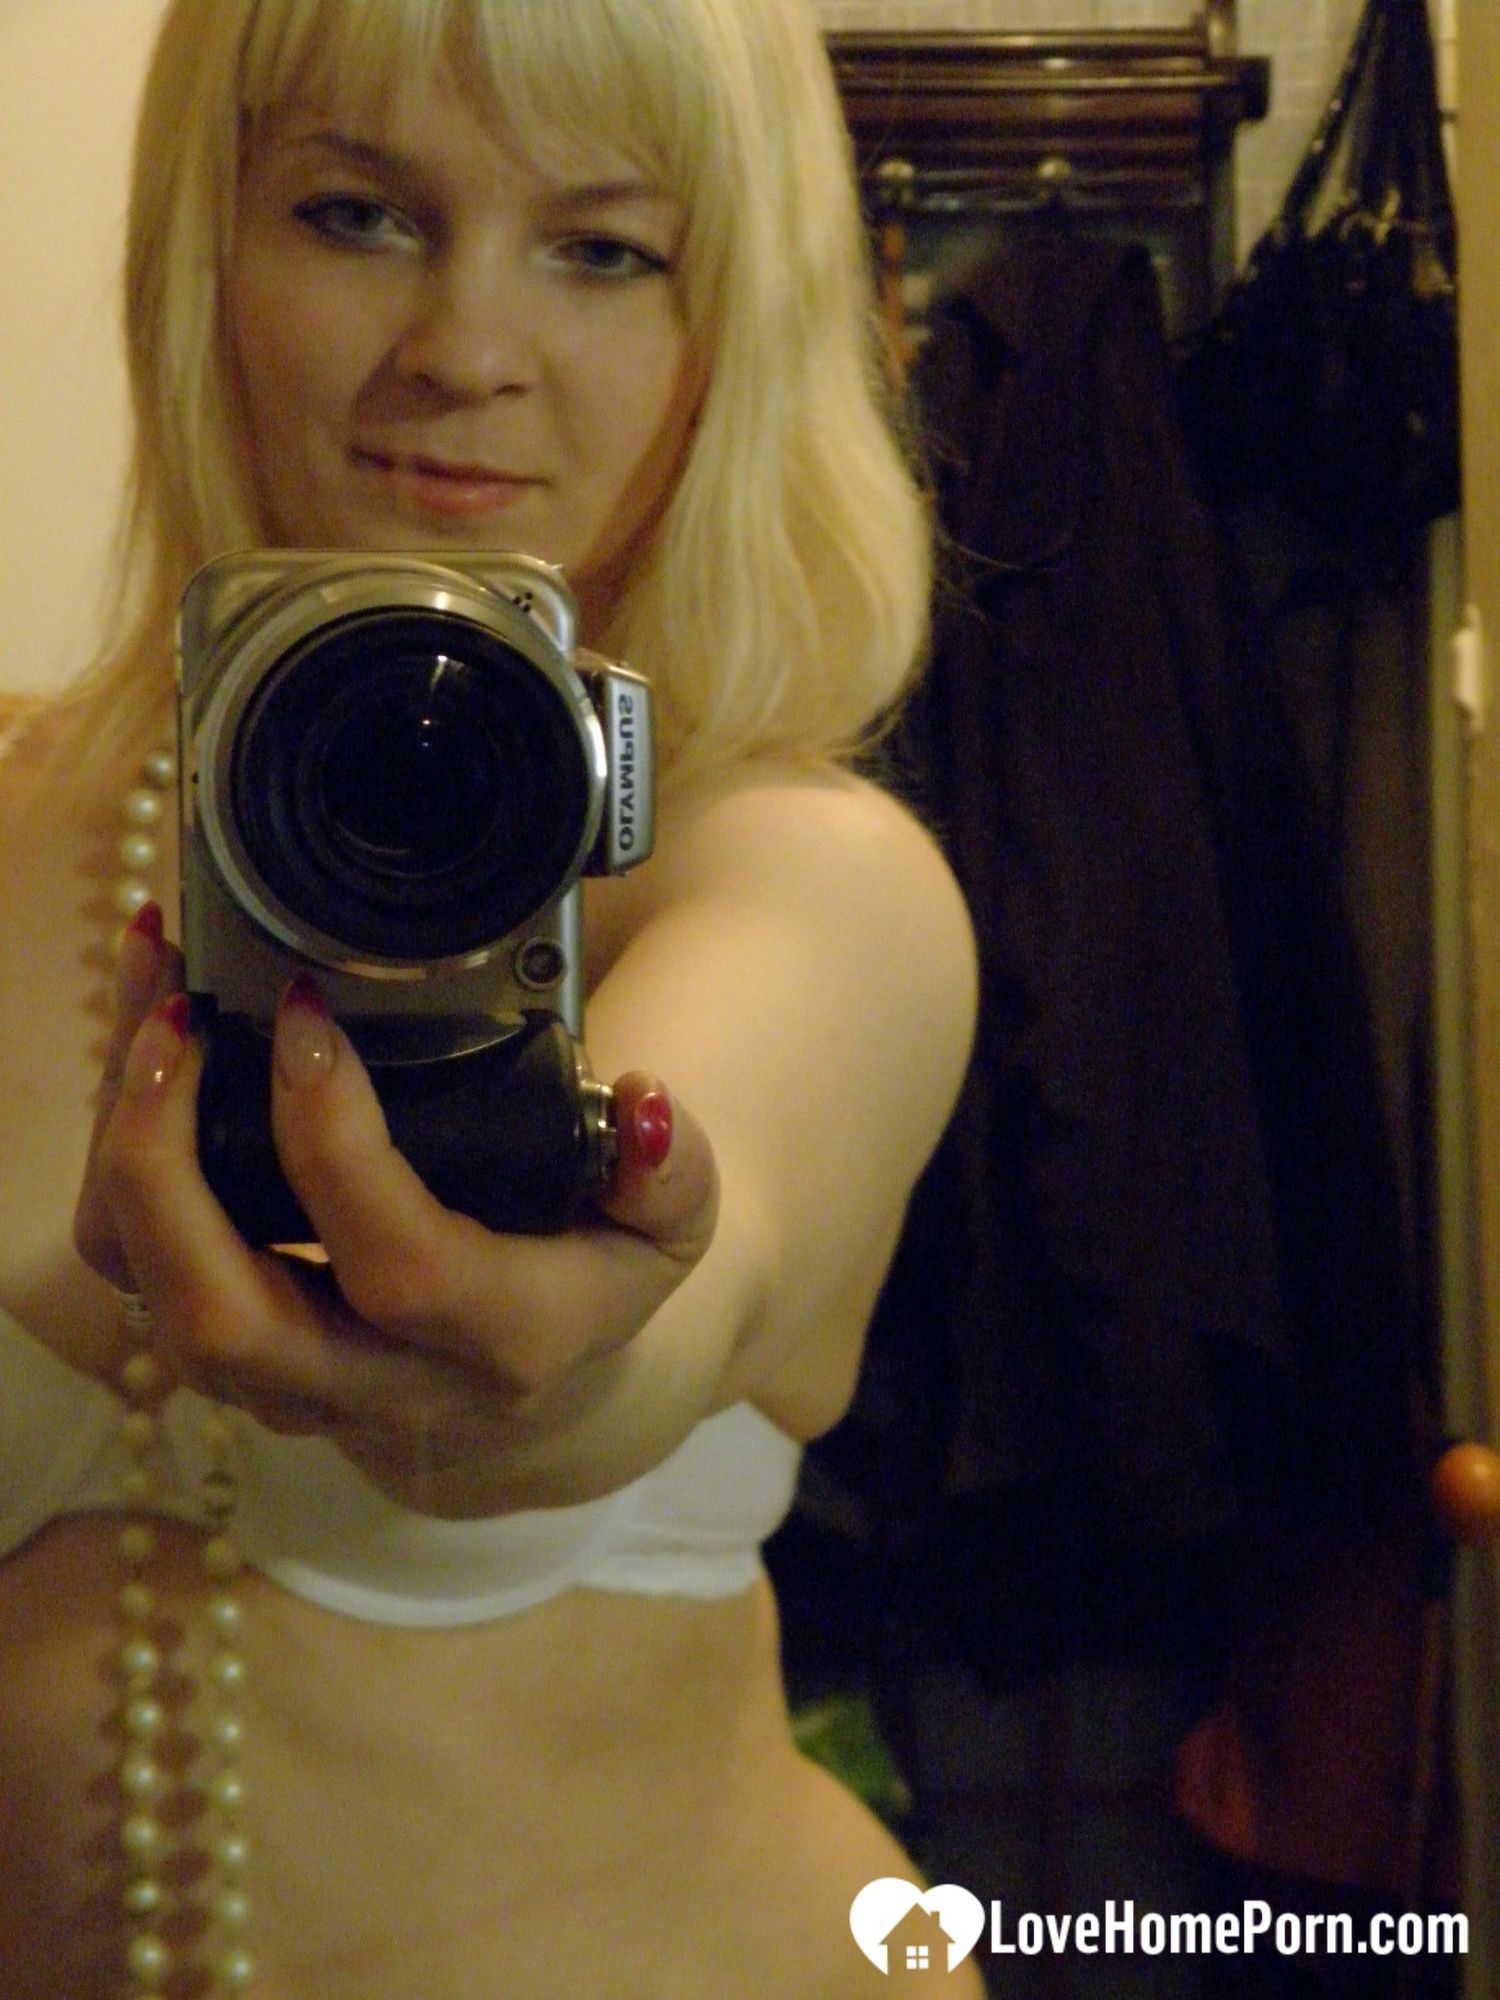 Aroused blonde in stockings taking naughty selfies #3